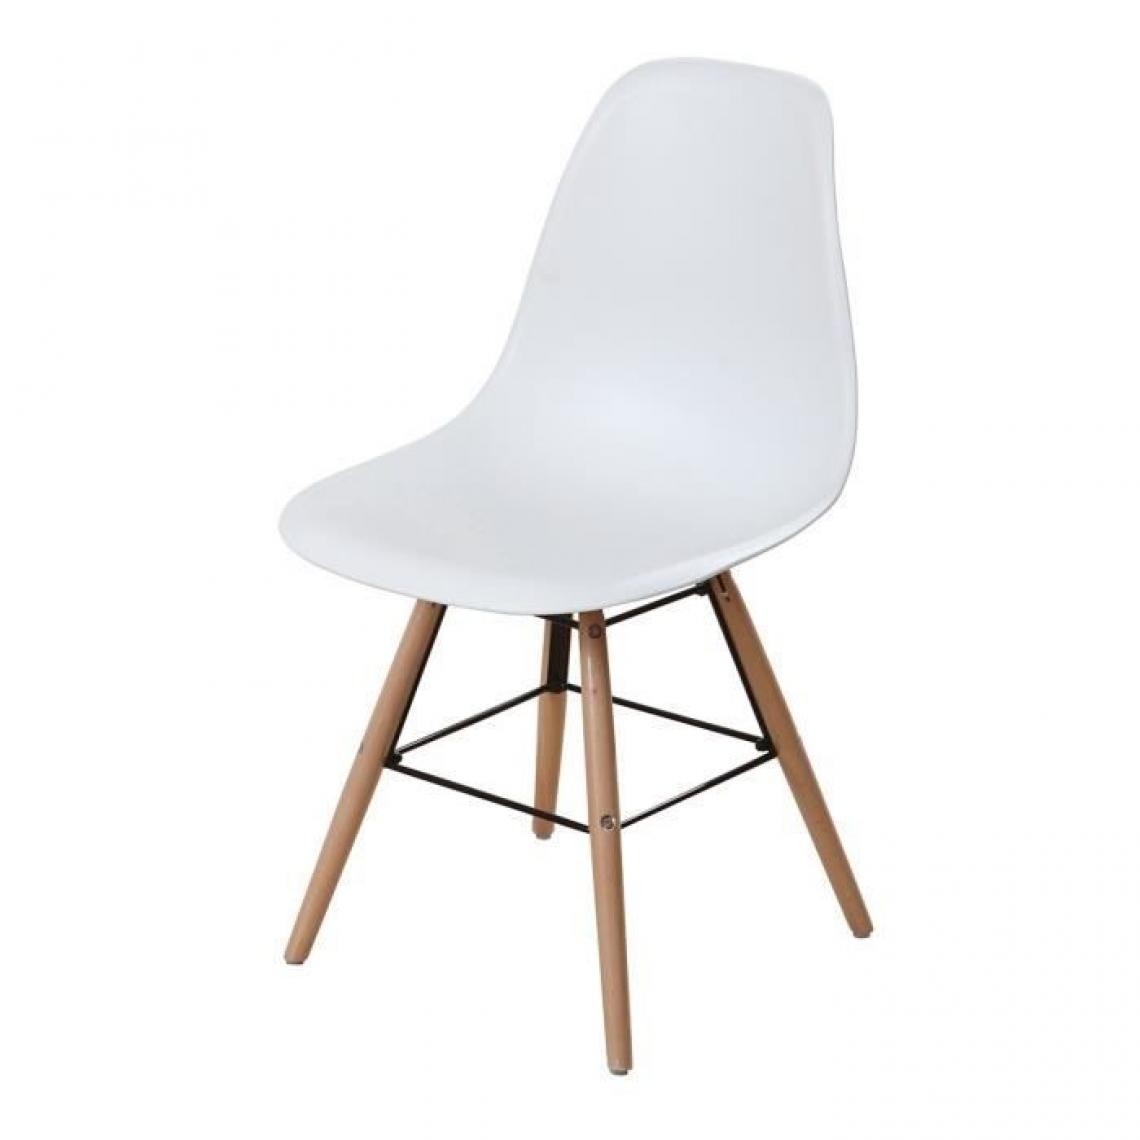 Cstore - Lot de 6 chaises blanc pieds bois - L 47 x P 52 x H 83 cm - OLAF - Chaises